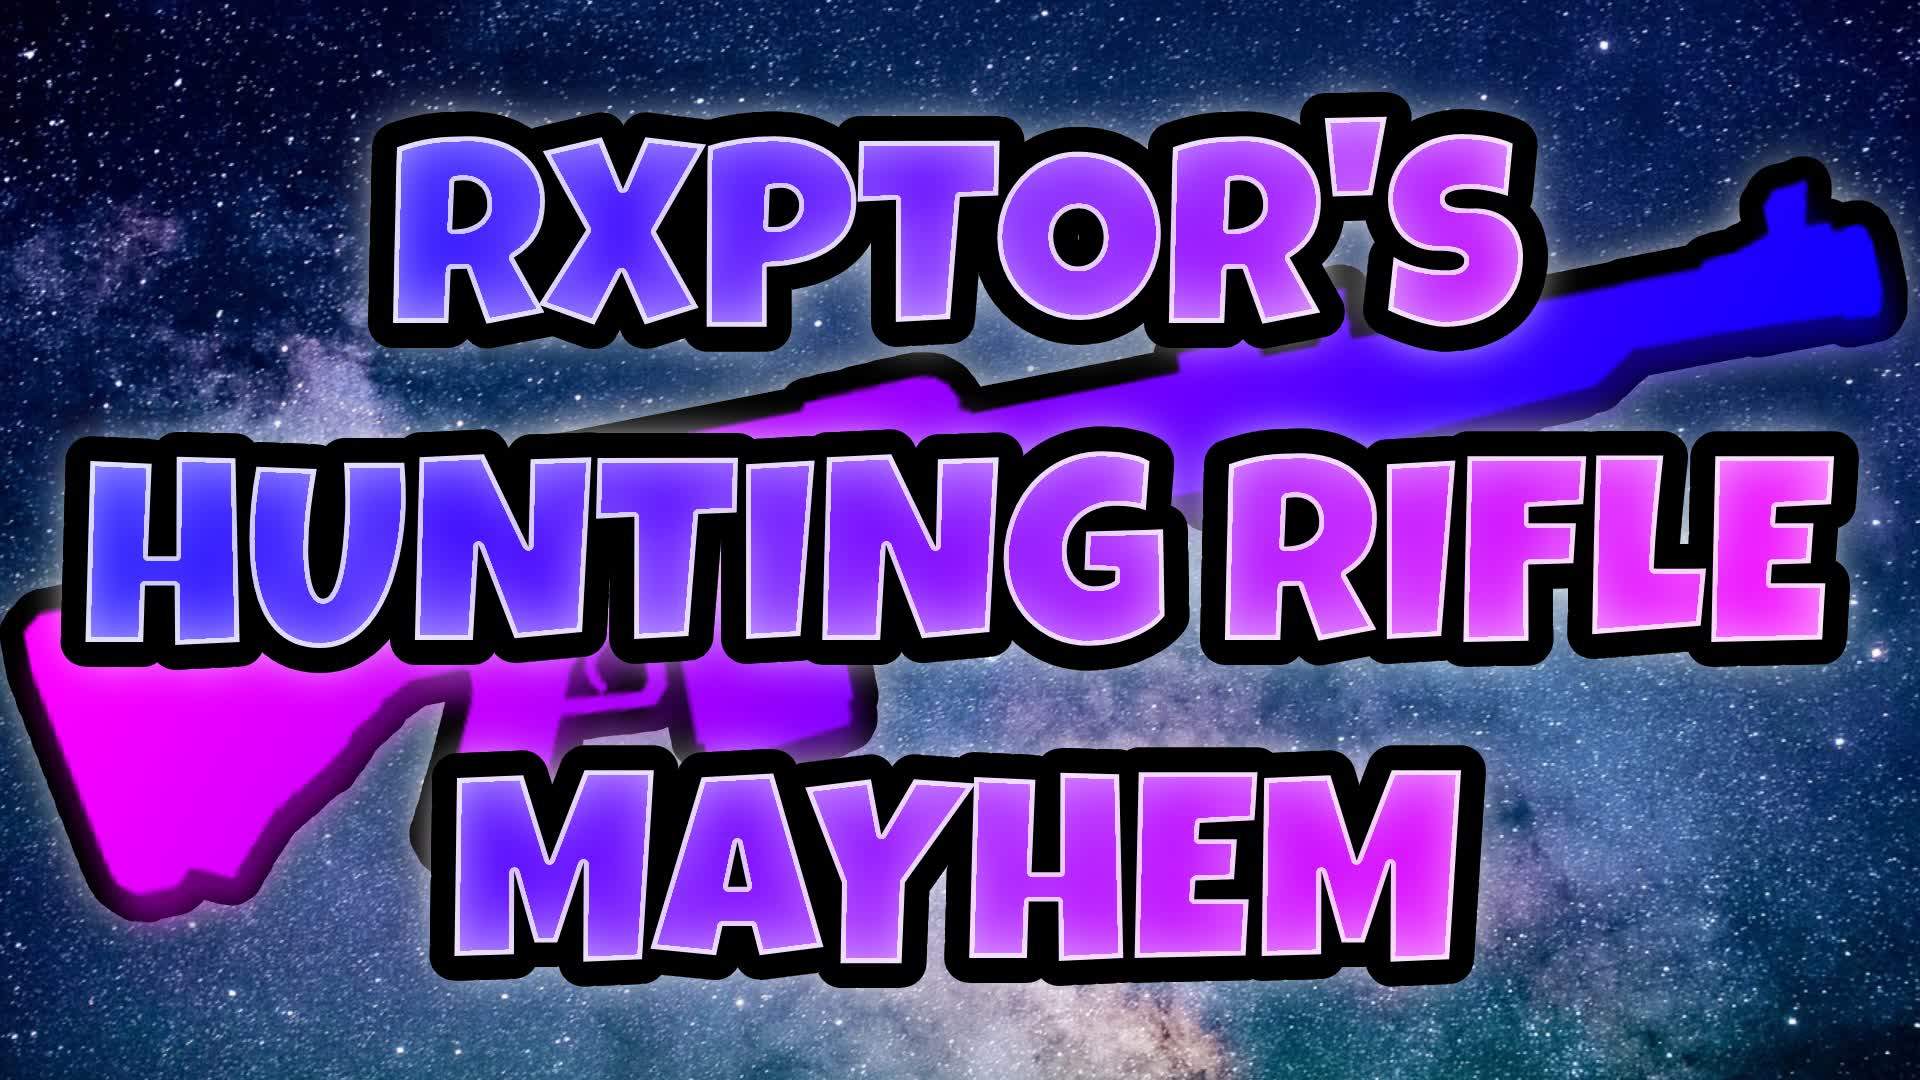 Rxptor's Hunting Rifle Mayhem